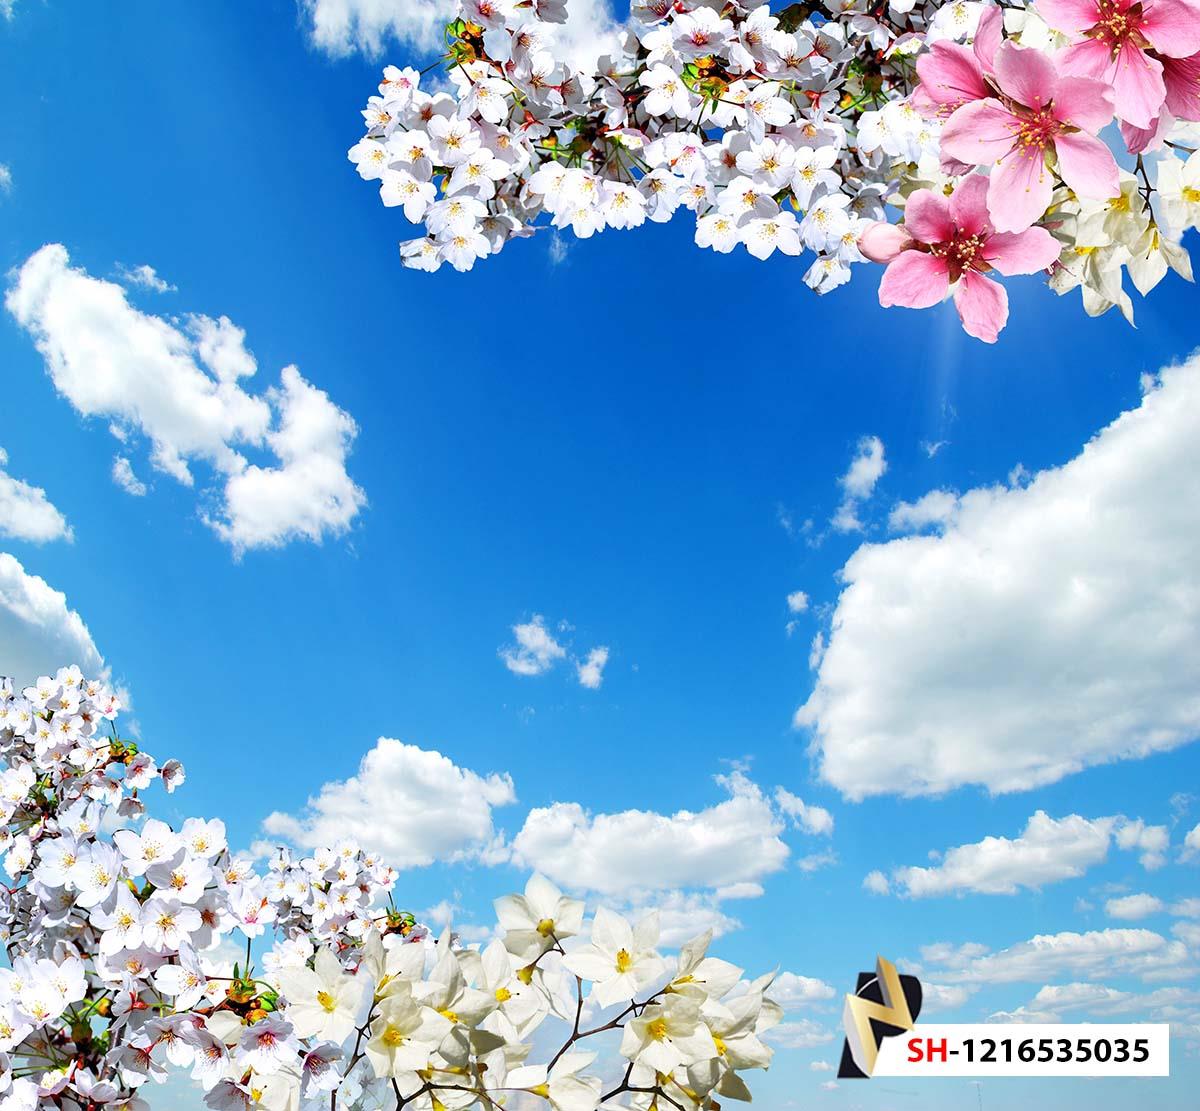 آسمان و شکوفه بهاری سفید صورتی